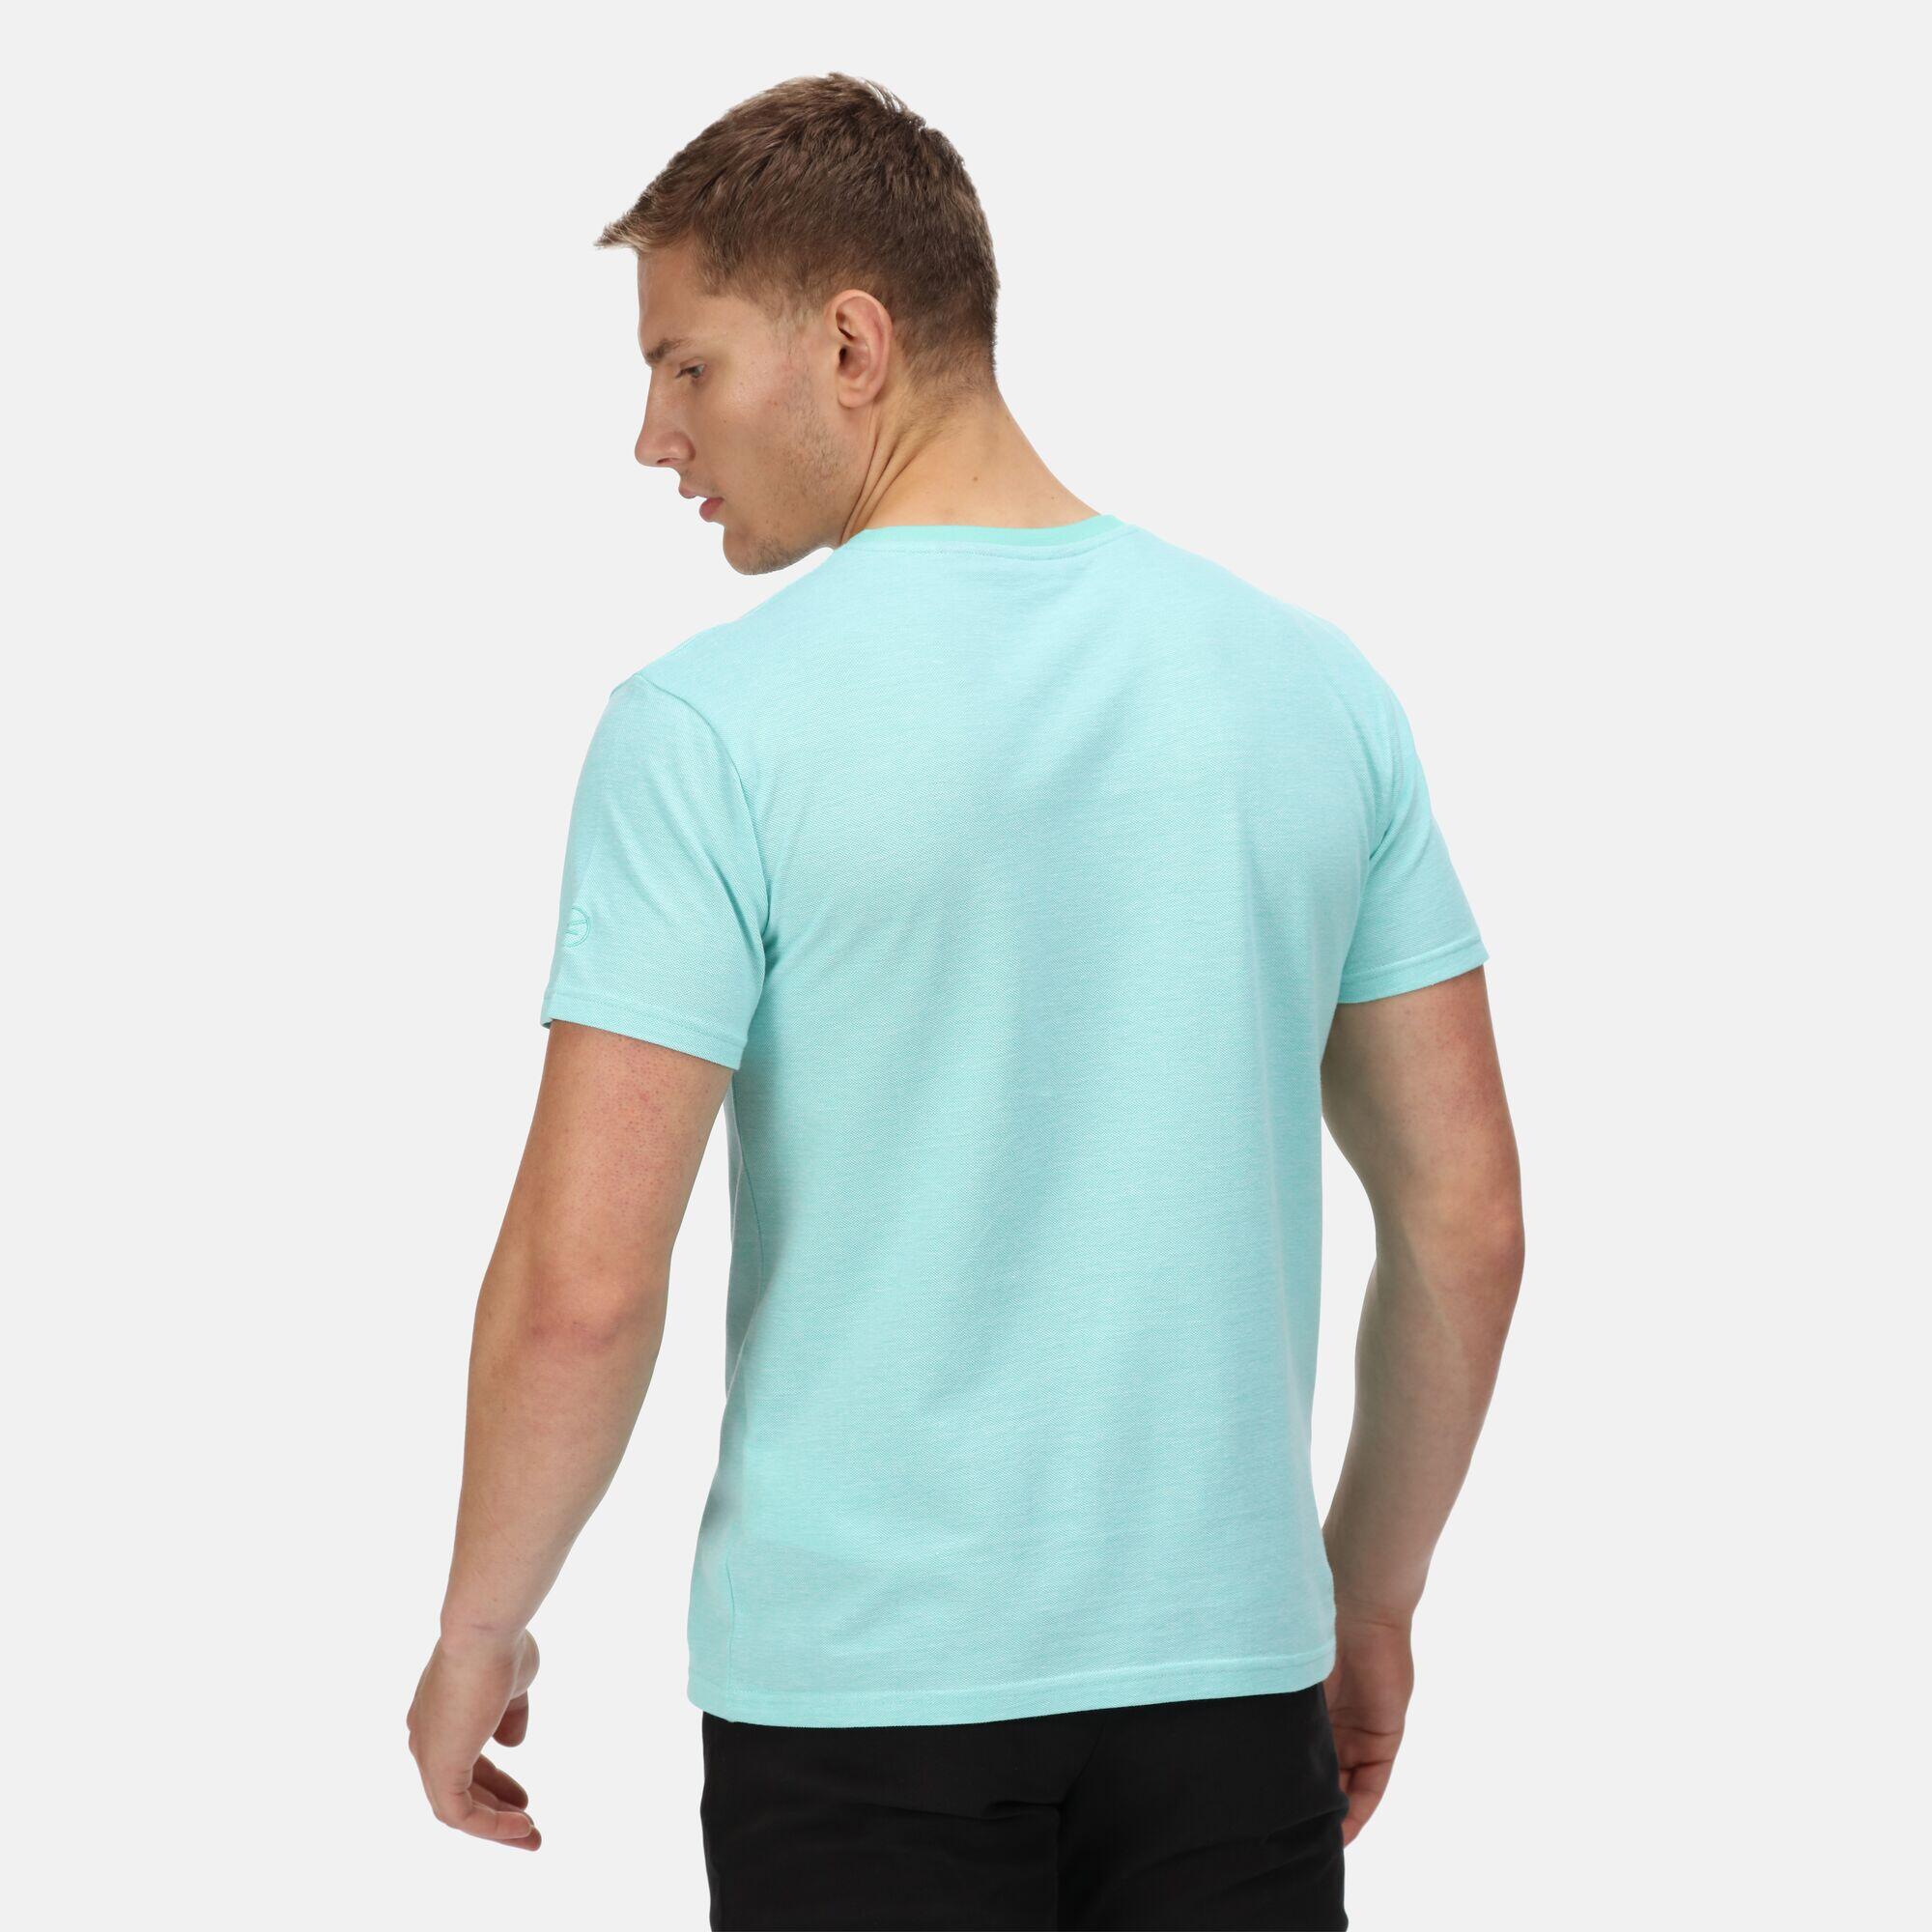 Caelum Men's Walking Short Sleeve T-Shirt - Opal Blue 2/5